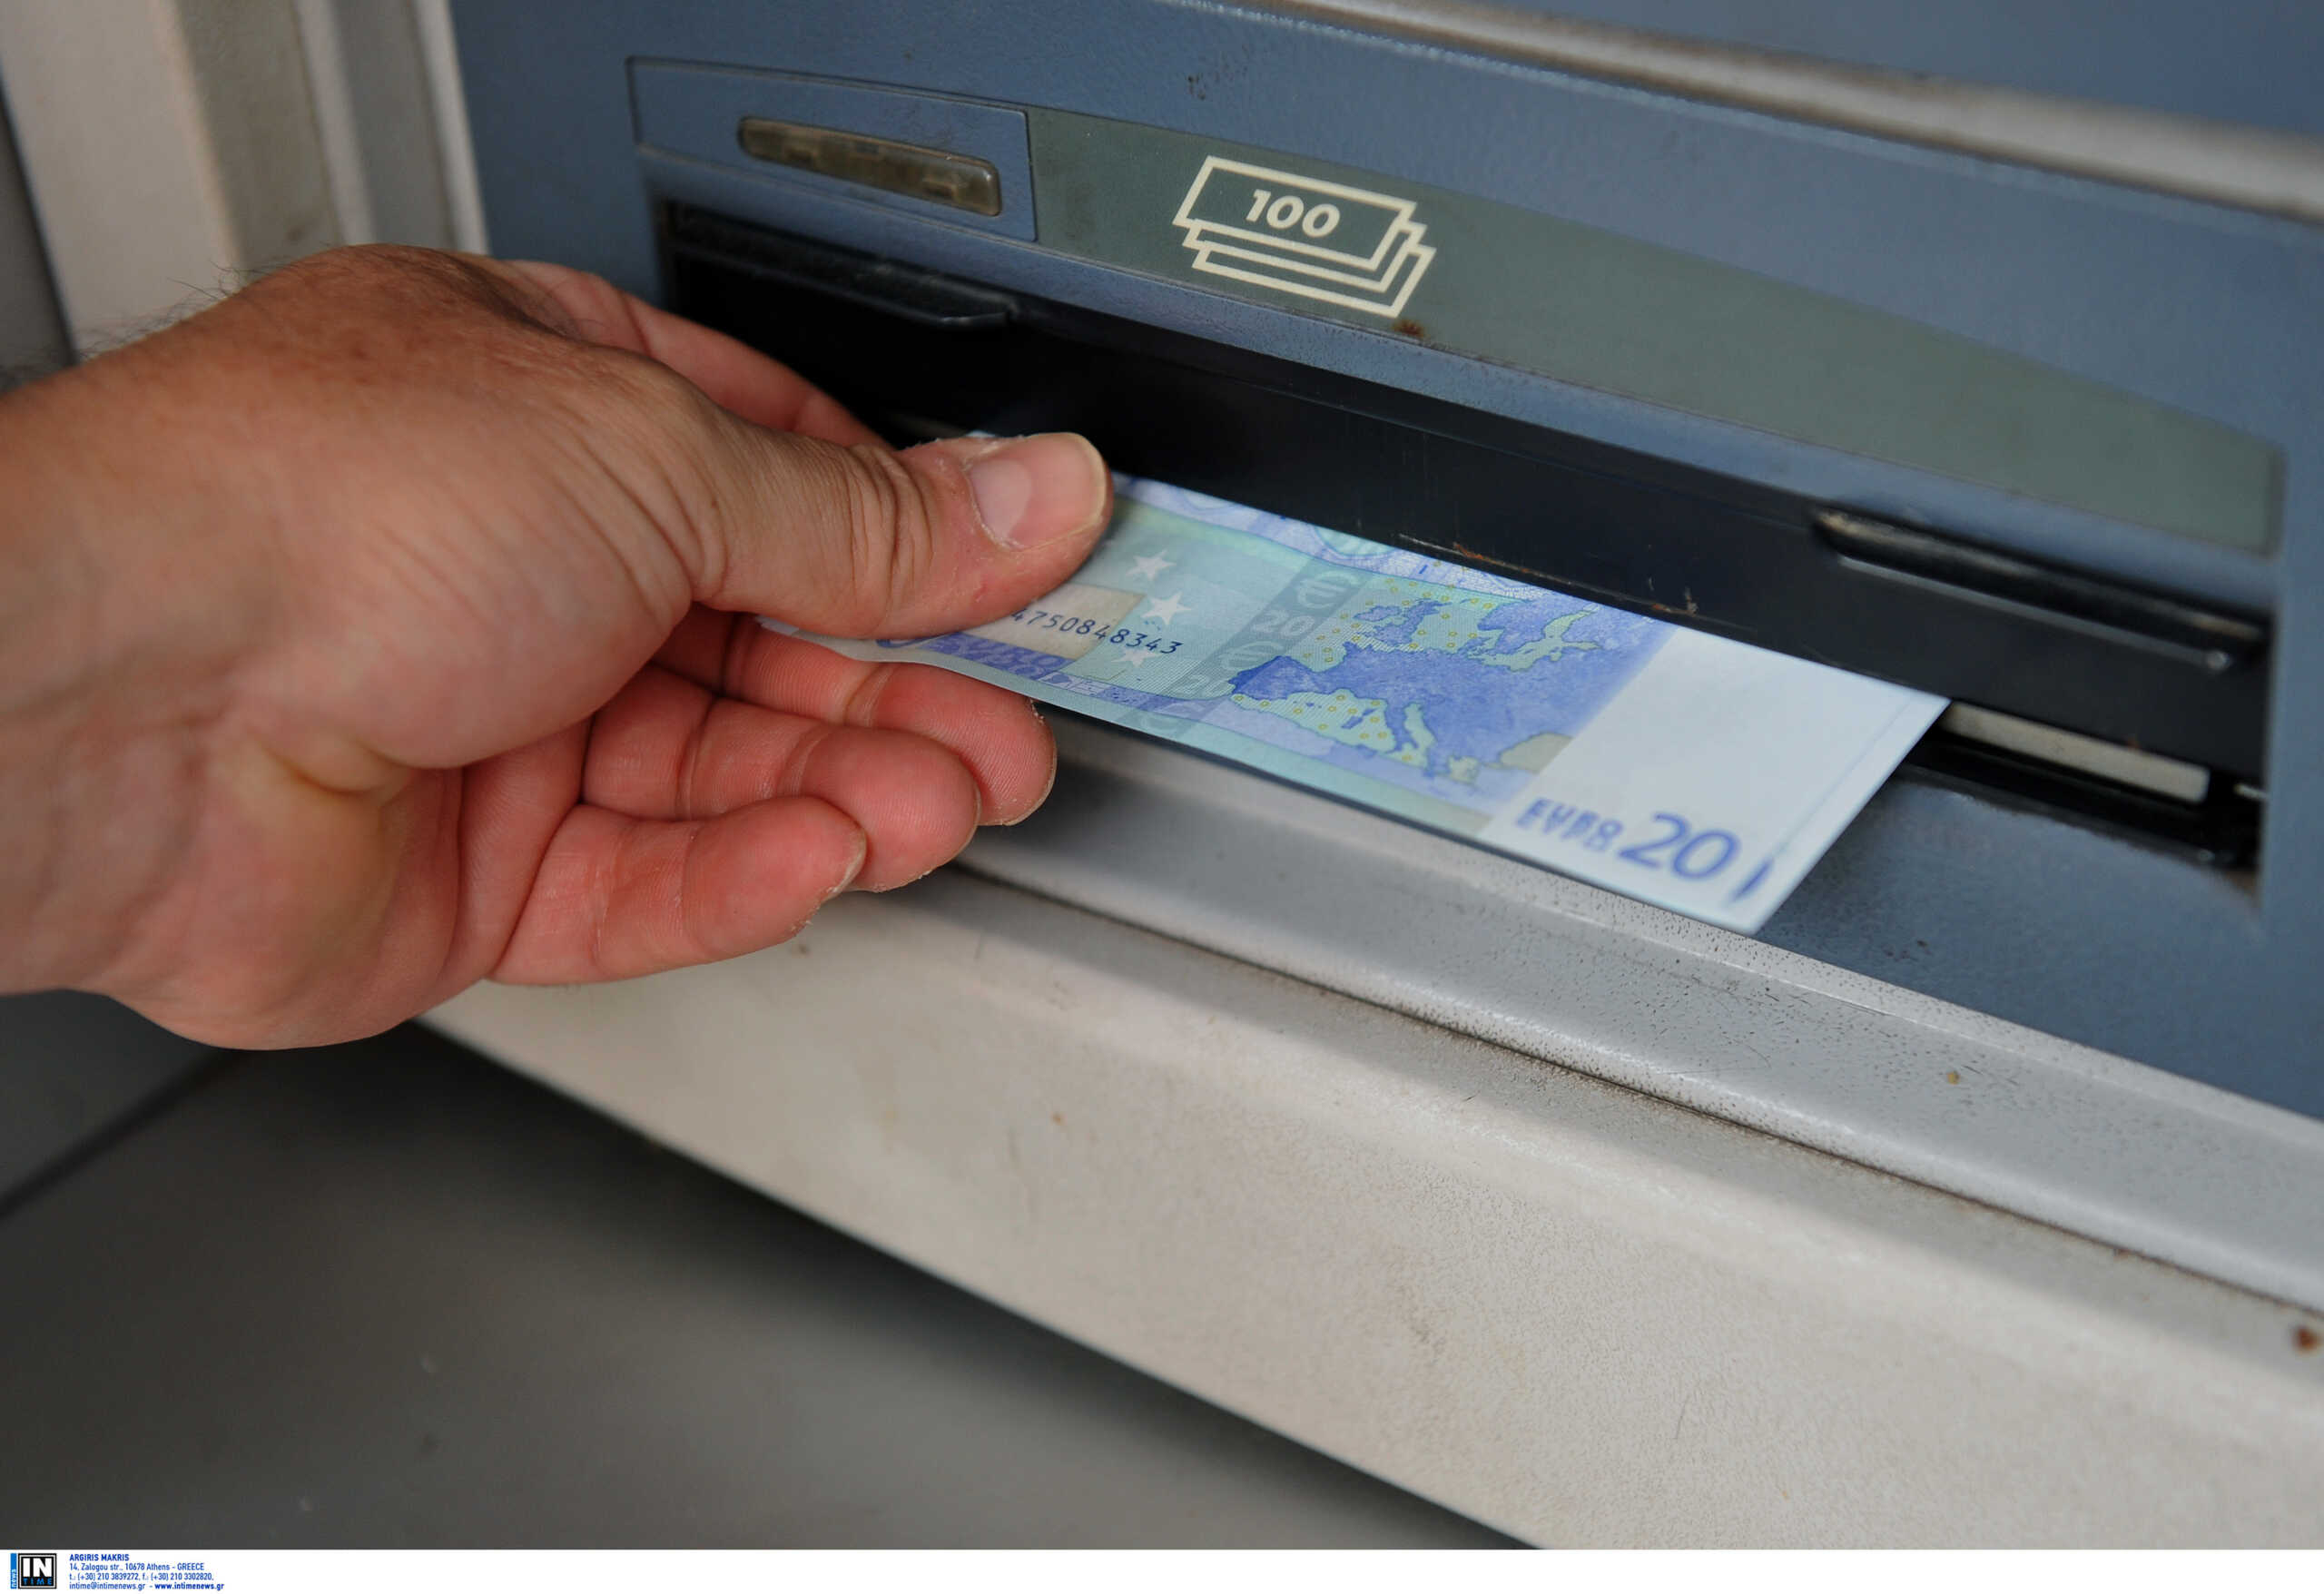 Σταϊκούρας: Σε τεταμένο κλίμα η συνάντηση με τις τράπεζες – «Να στηριχθούν οι πολίτες που δοκιμάζονται»